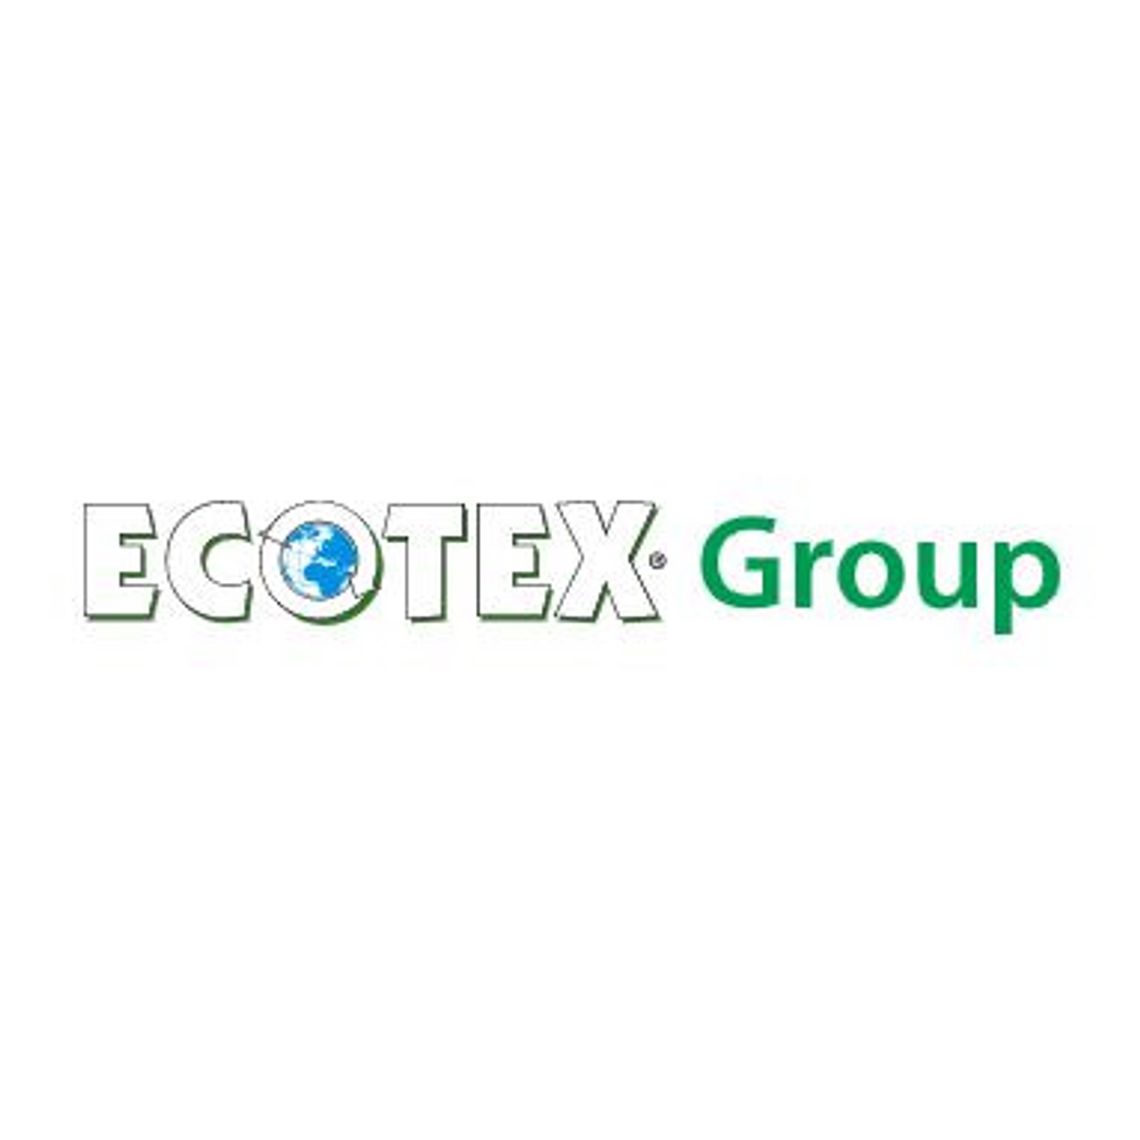 Importer odzieży używanej - Ecotex Poland